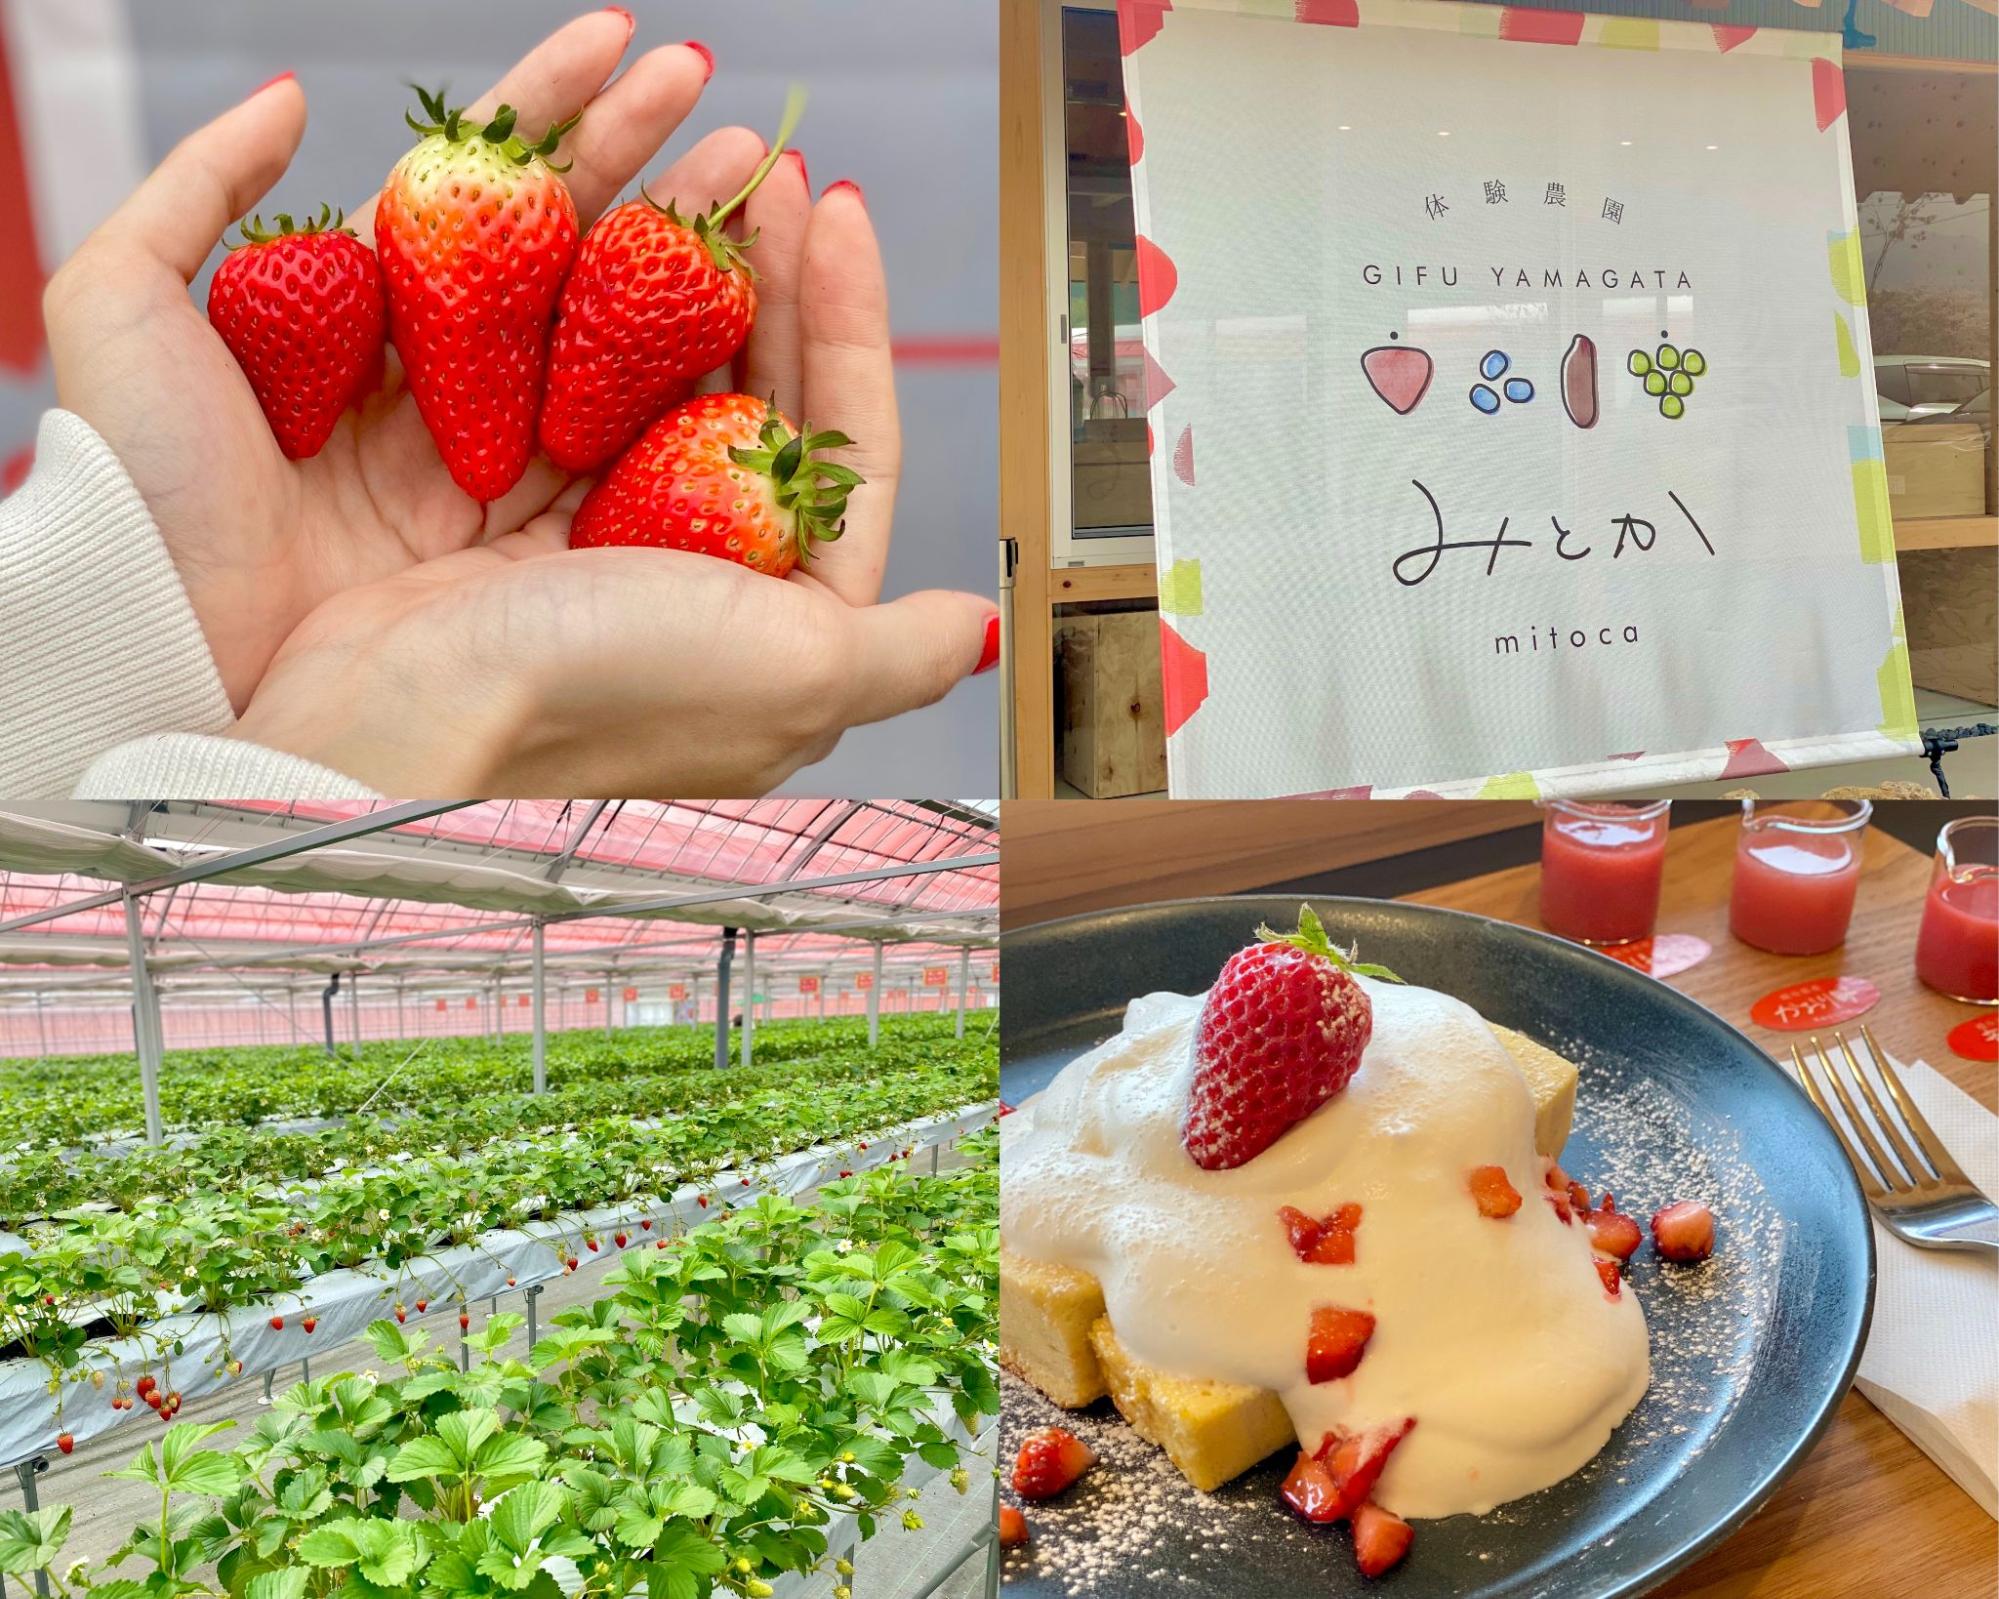 体験農園みとか 岐阜県山県市 旬なフルーツの収穫が体験できる ライフデザインズ